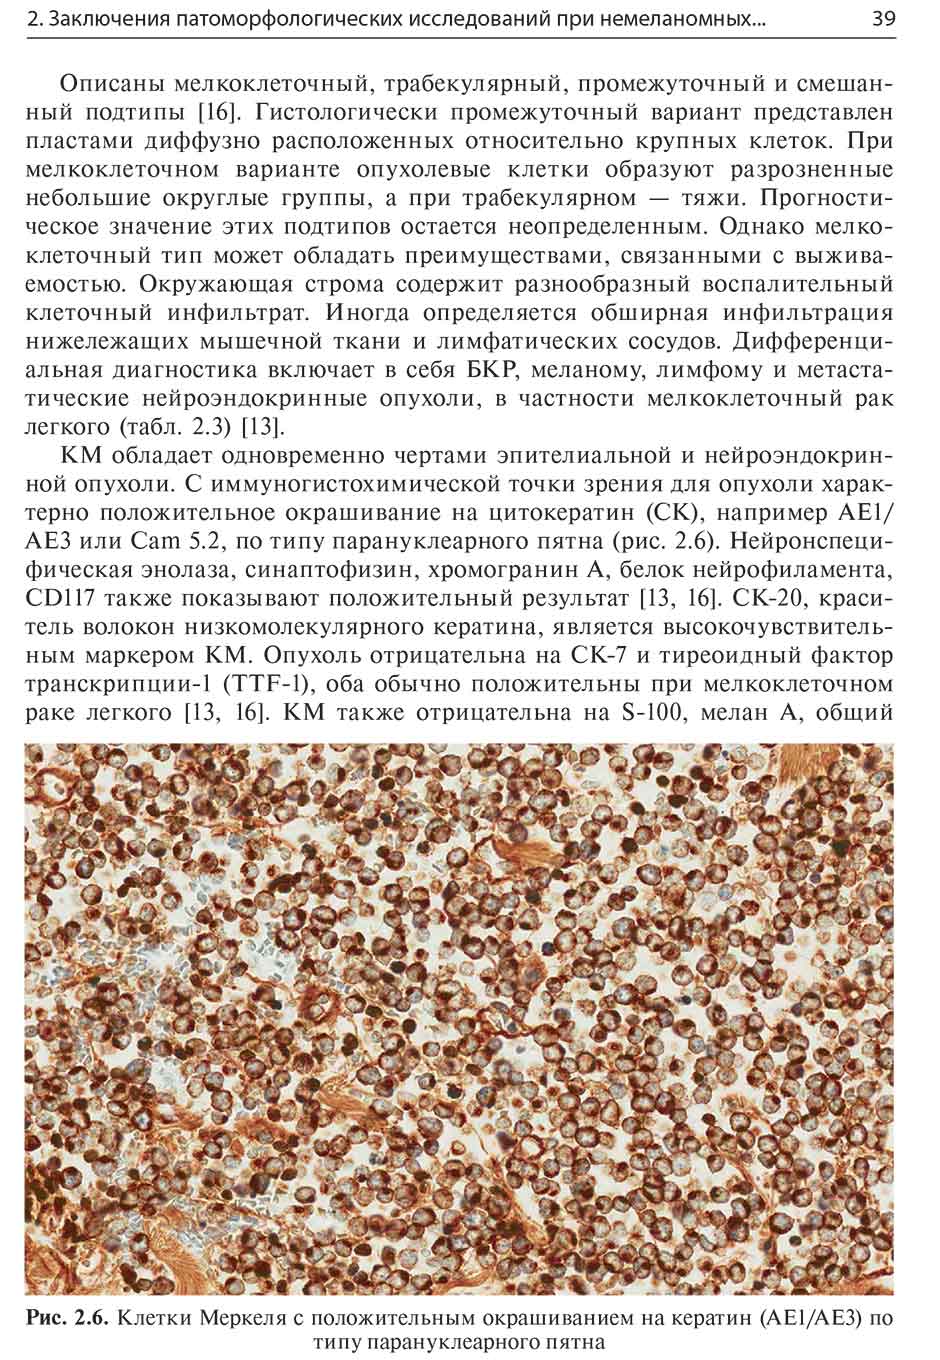 Рис. 2.6. Клетки Меркеля с положительным окрашиванием на кератин (АЕ1/АЕЗ) по типу парану клеарного пятна